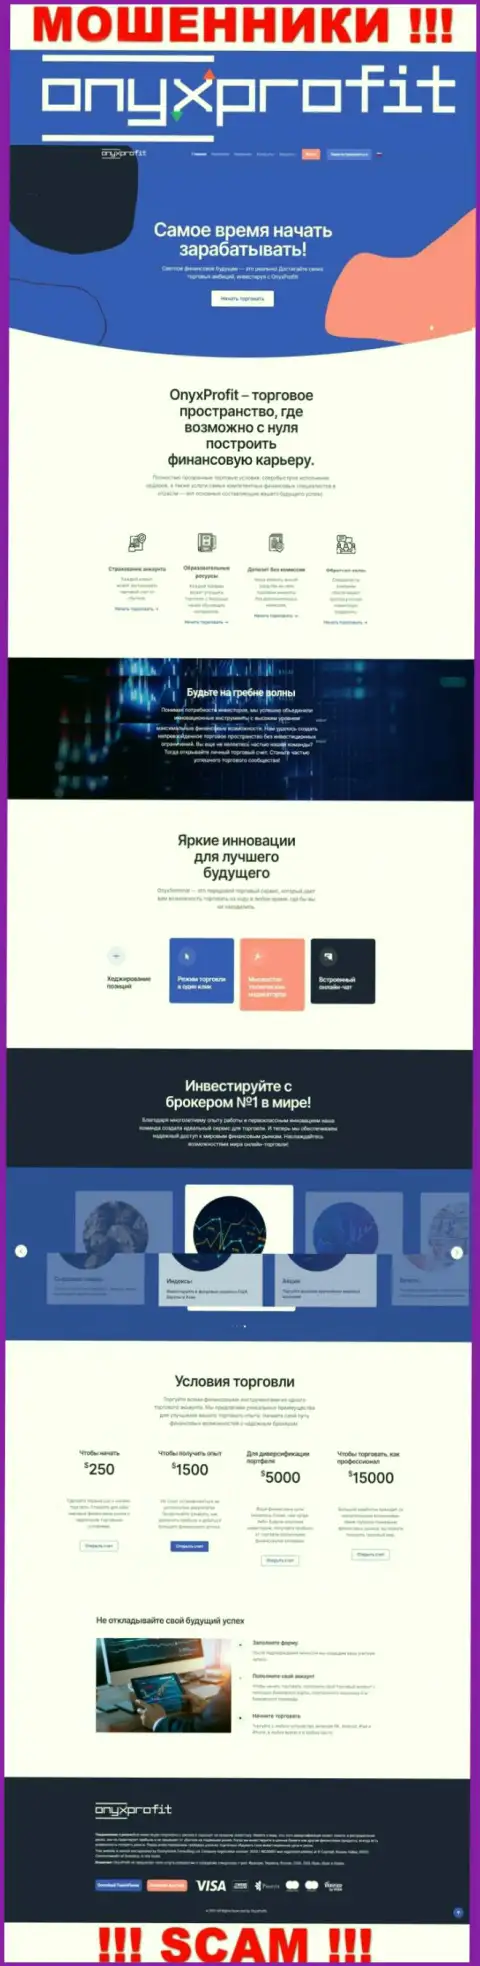 Главная страничка официального интернет-портала шулеров ОниксПрофит Про